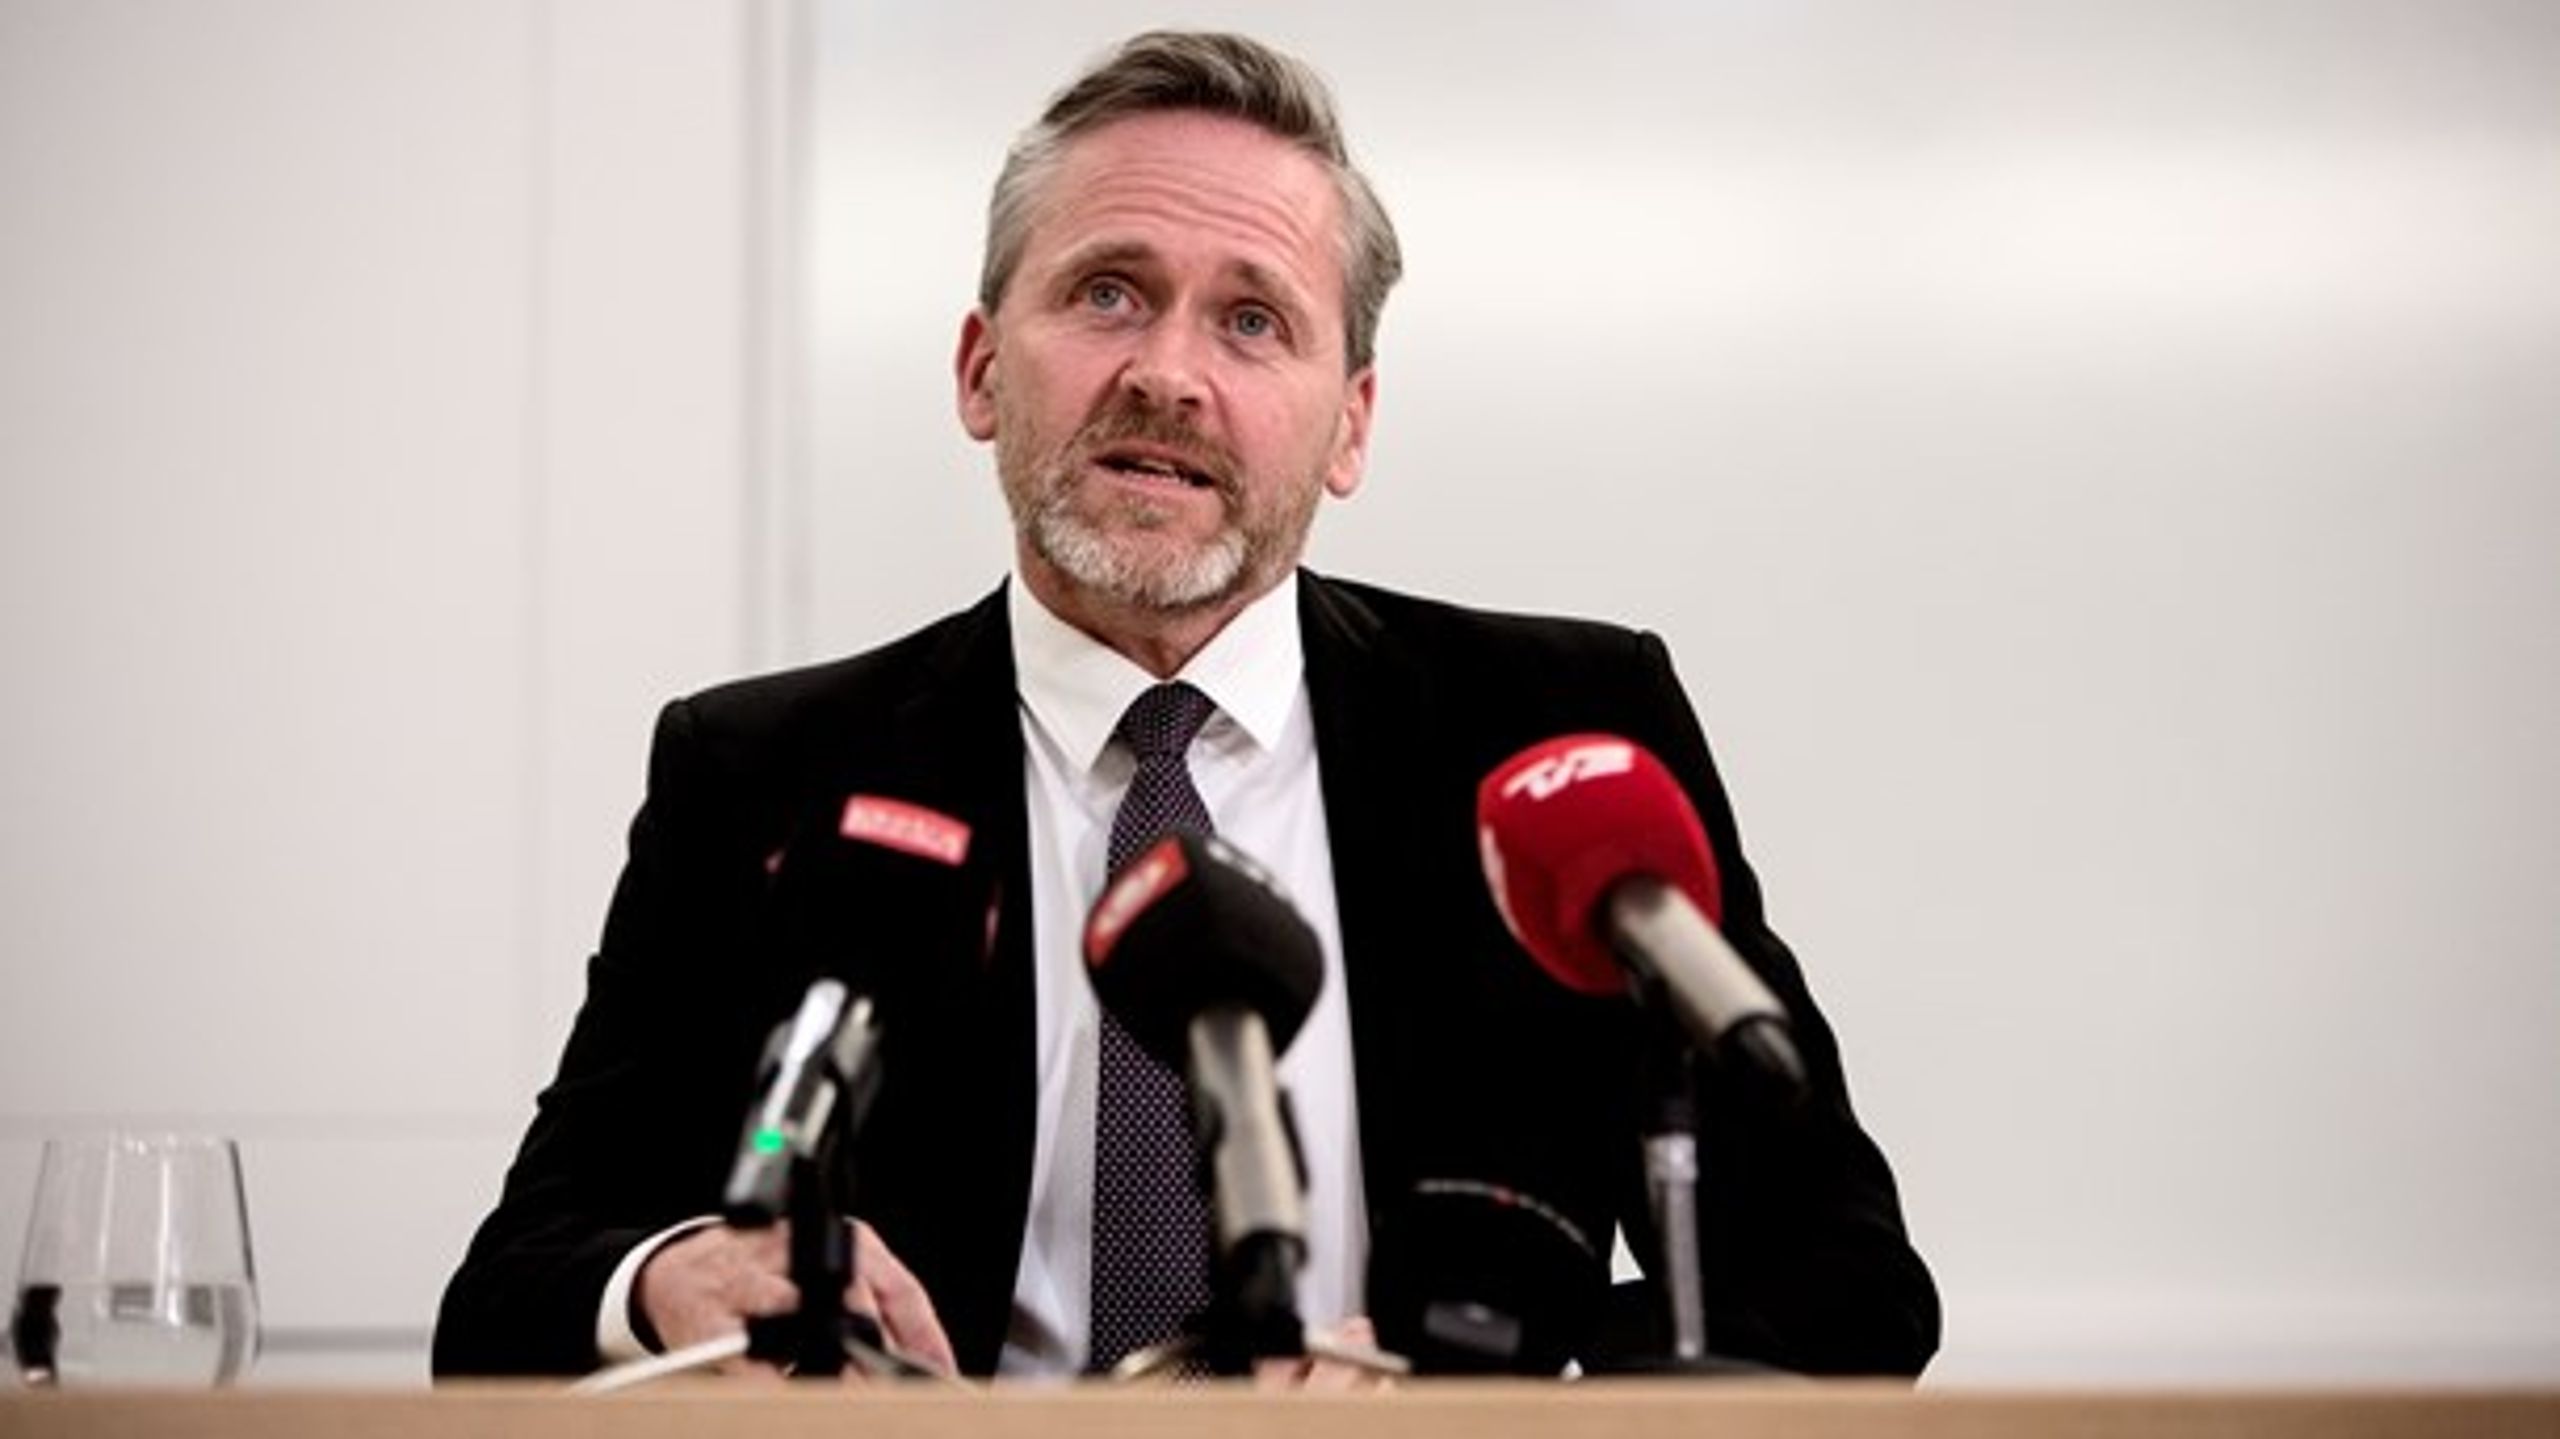 "Det politiske nederlag er totalt," skriver Jyllands-Posten i dagens leder om Liberal Alliance, som nu stemmer for finansloven trods trusler om det modsatte.